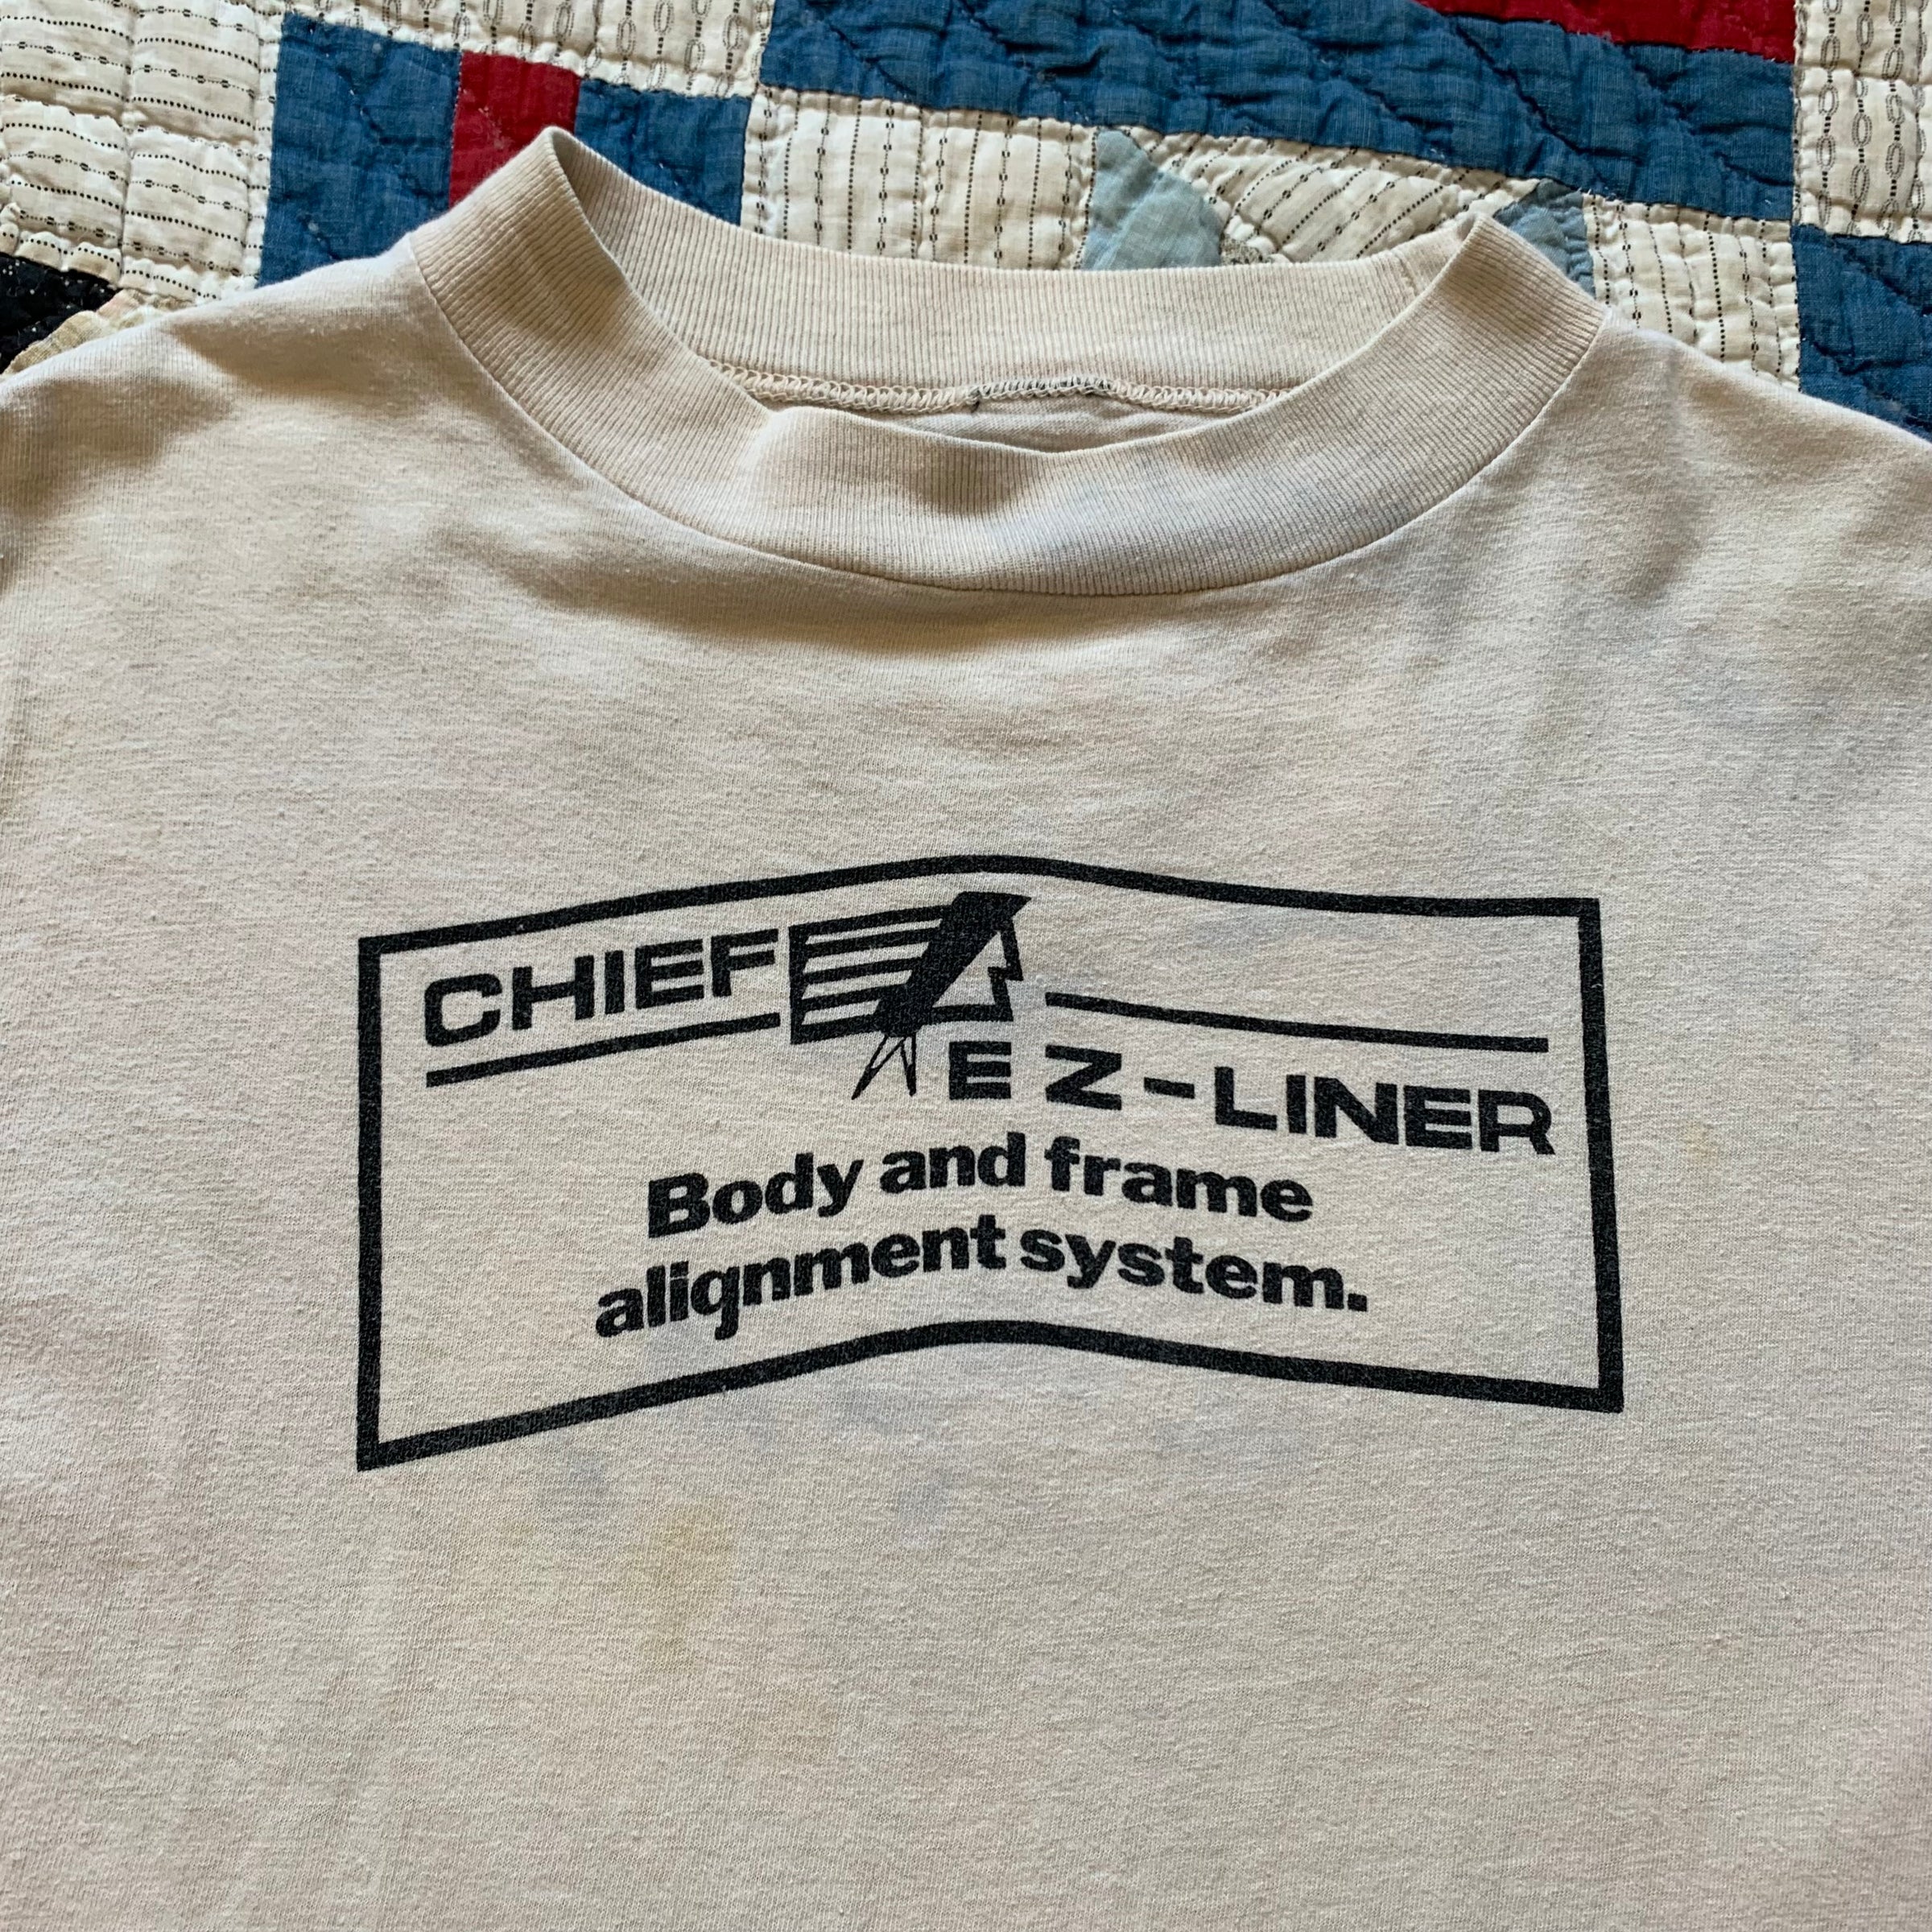 1980's Keller's Body Shop Automotive T-Shirt Medium